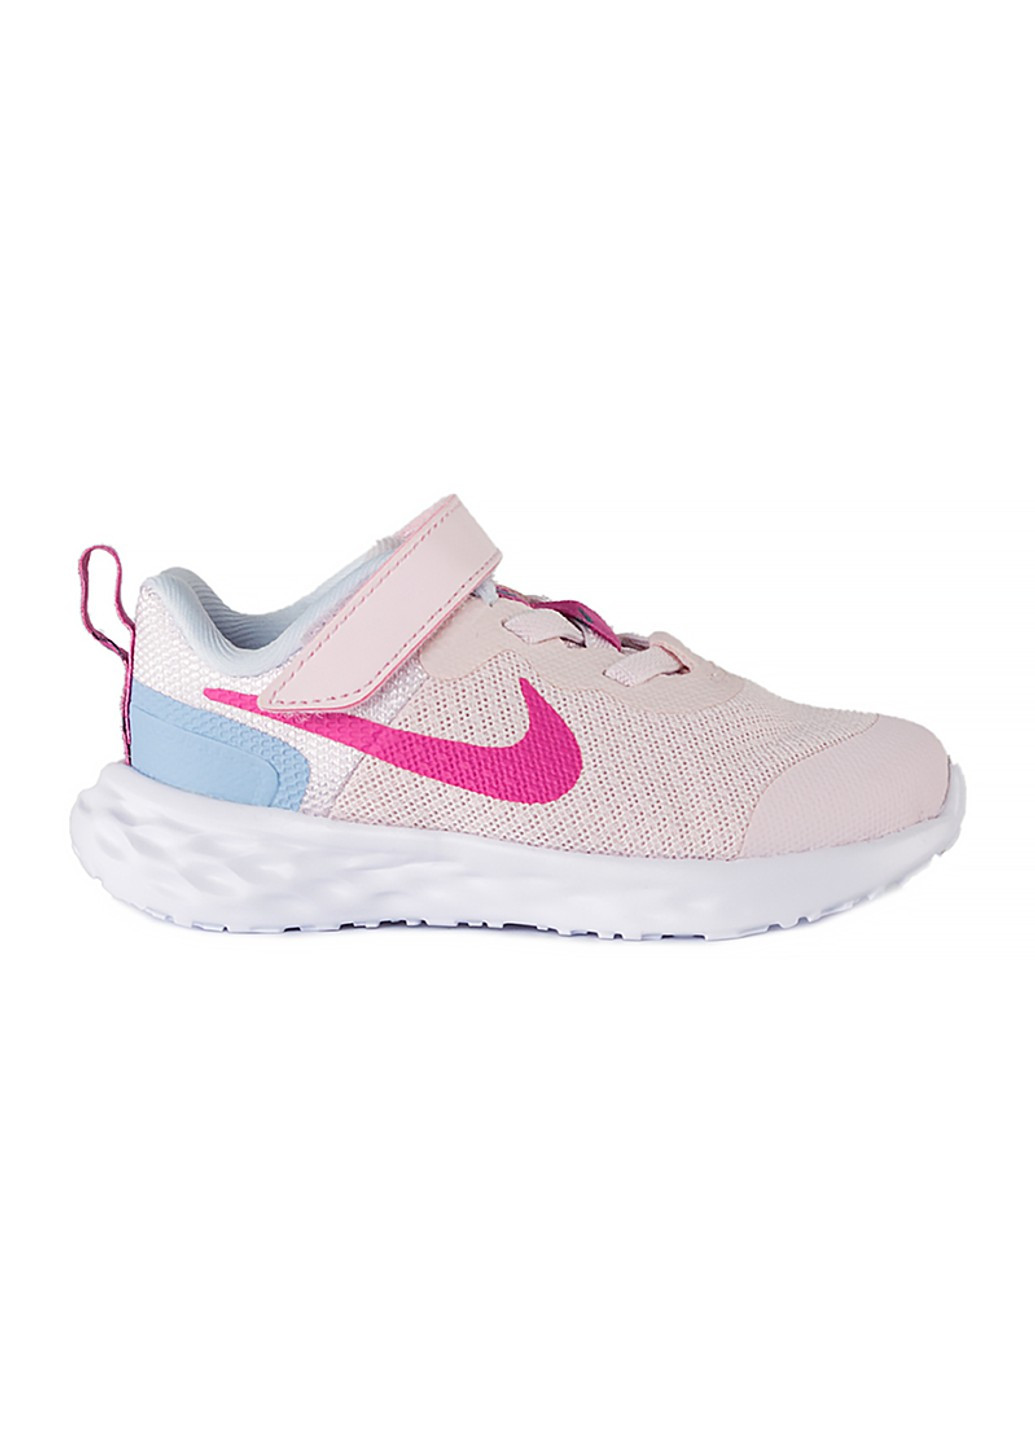 Розовые демисезонные кроссовки revolution 6 nn (tdv) Nike